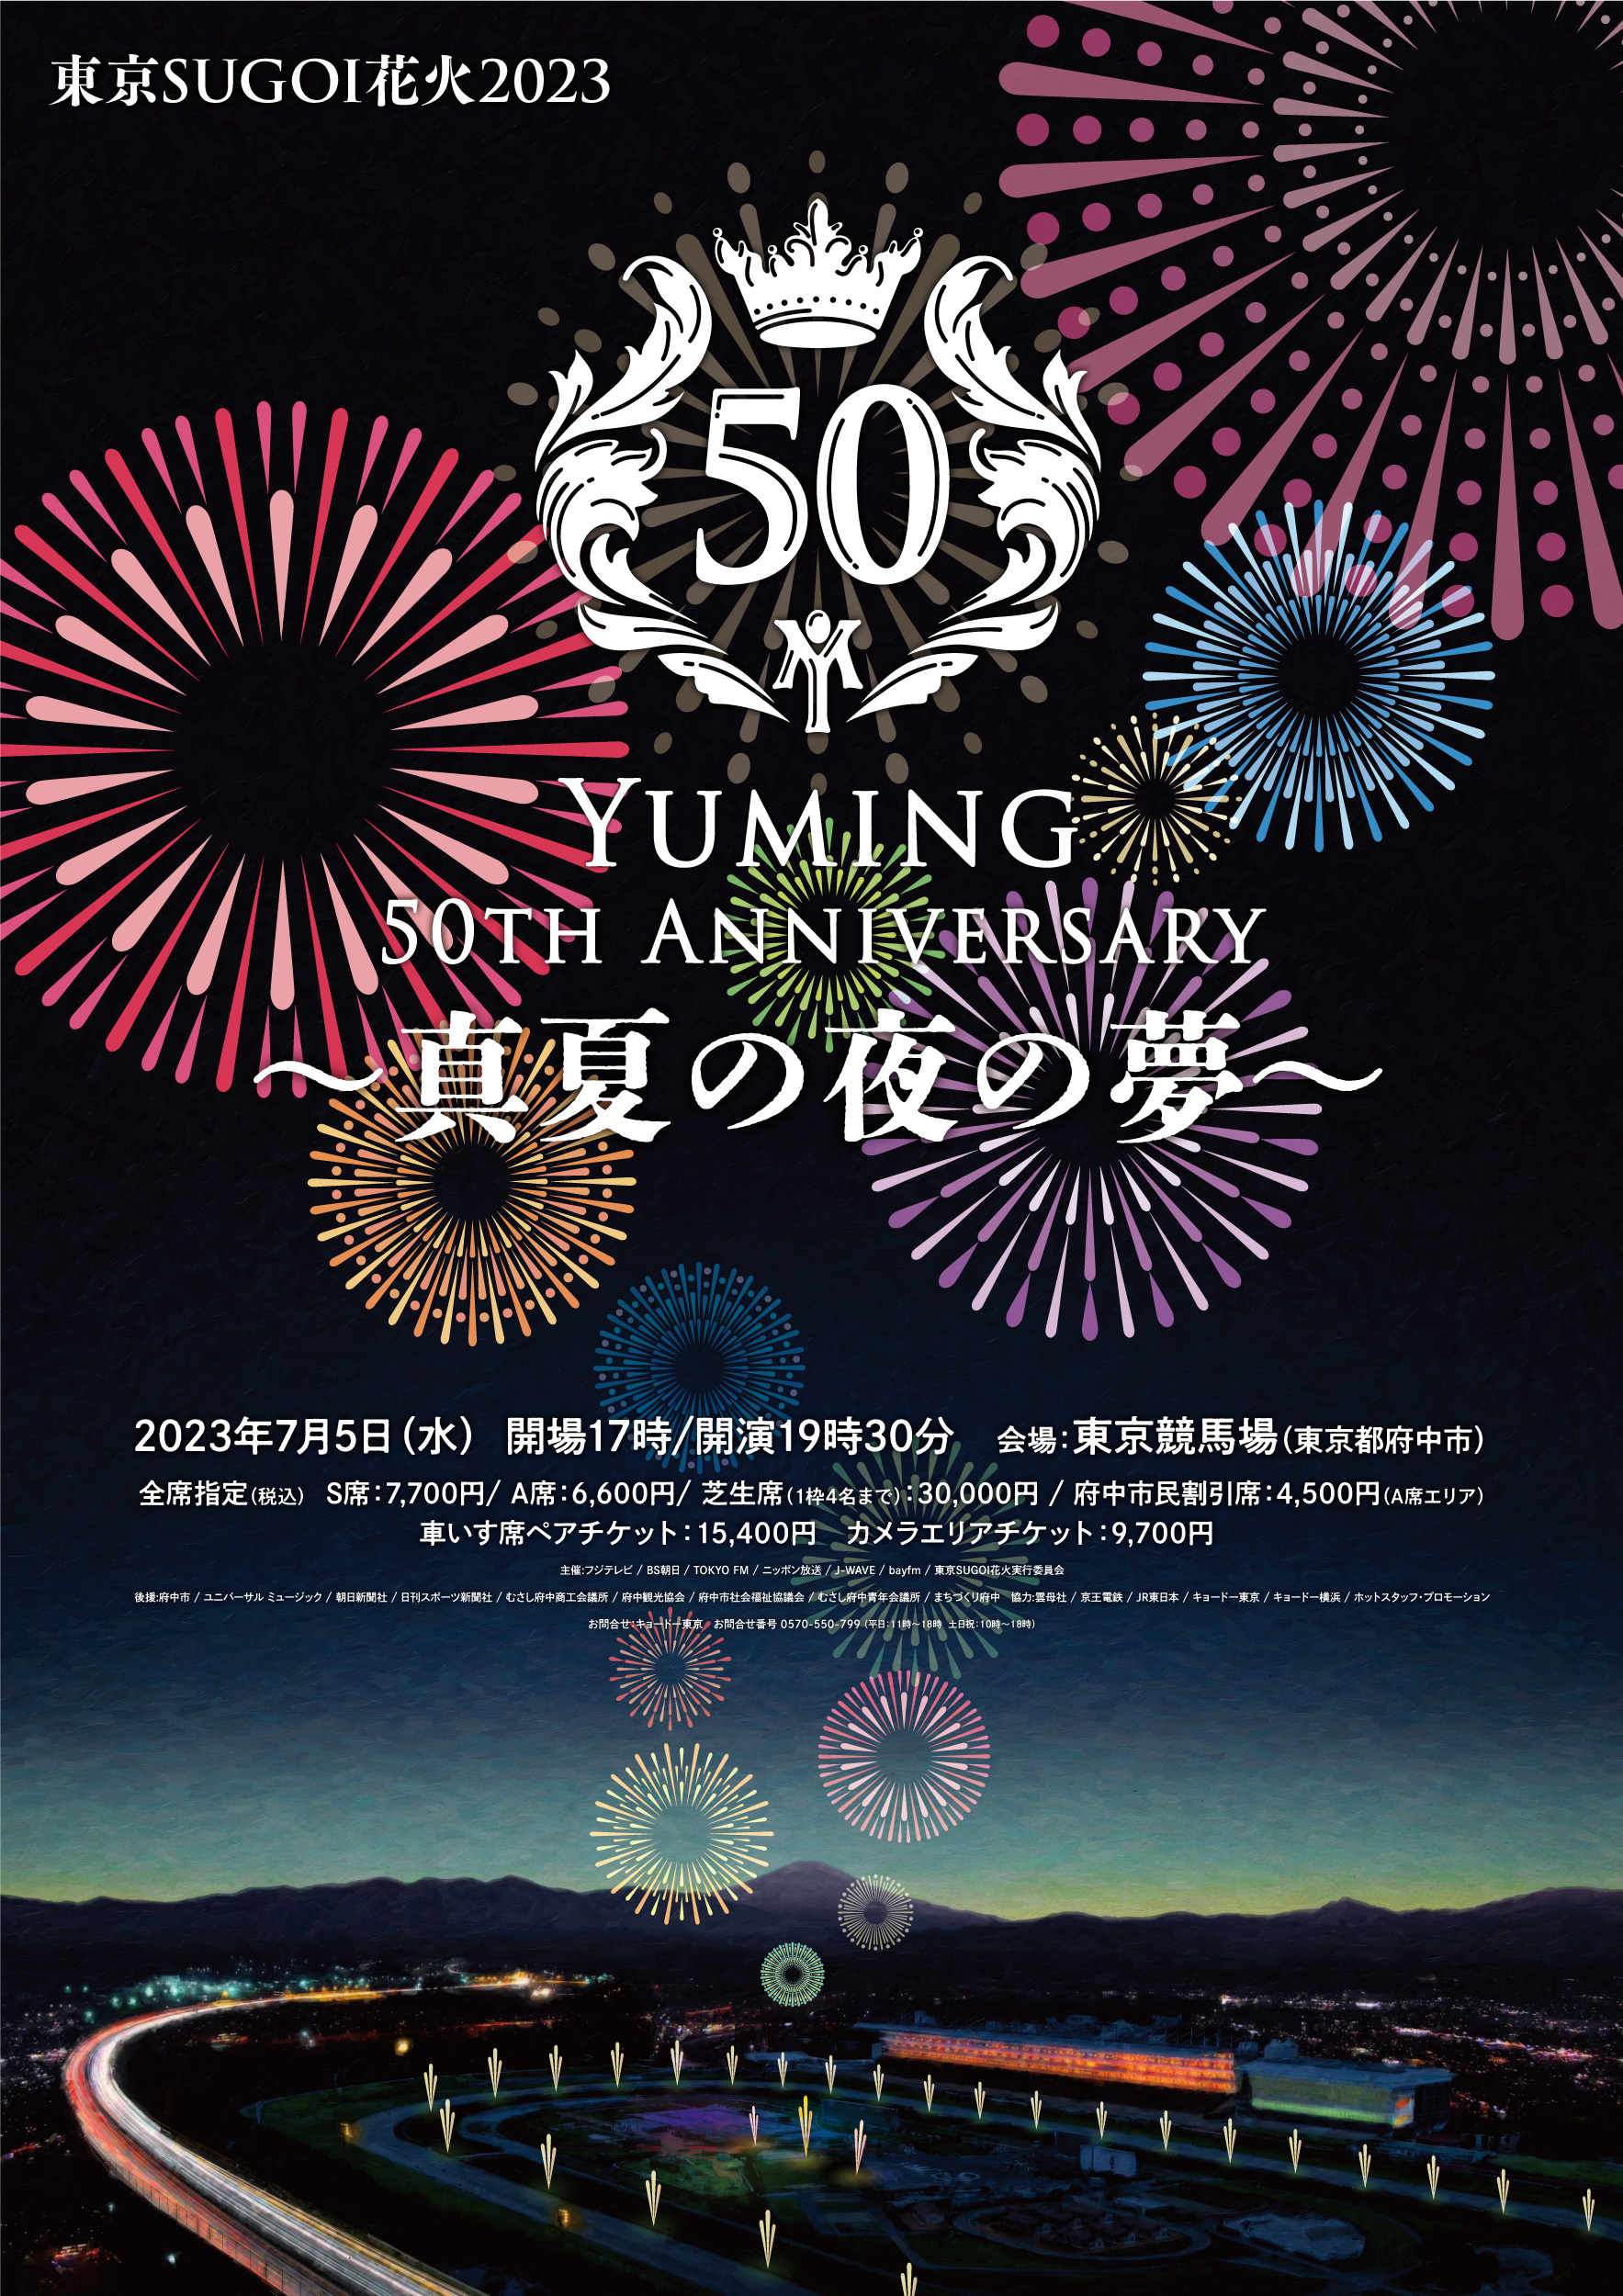 東京SUGOI花火2023「Yuming 50th Anniversary 〜真夏の夜の夢〜」 - ON 